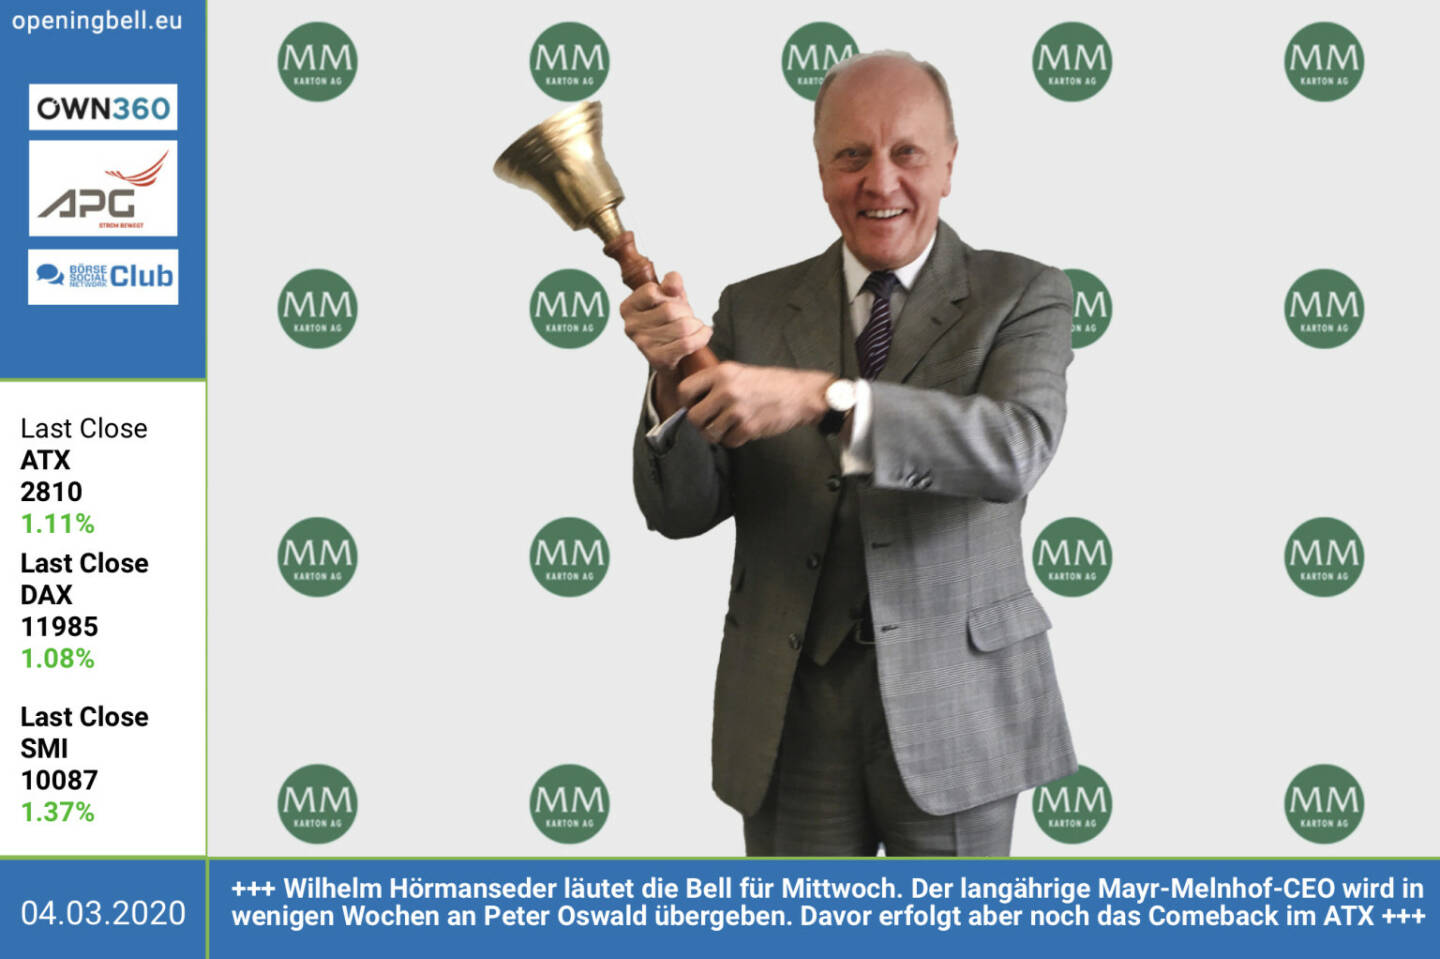 4.3.: Wilhelm Hörmanseder läutet die Opening Bell für Mittwoch. Der langährige Mayr-Melnhof-CEO wird in wenigen Wochen an Peter Oswald übergeben. Davor erfolgt aber noch das Comeback der Mayr-Melnhof-Aktie im ATX 